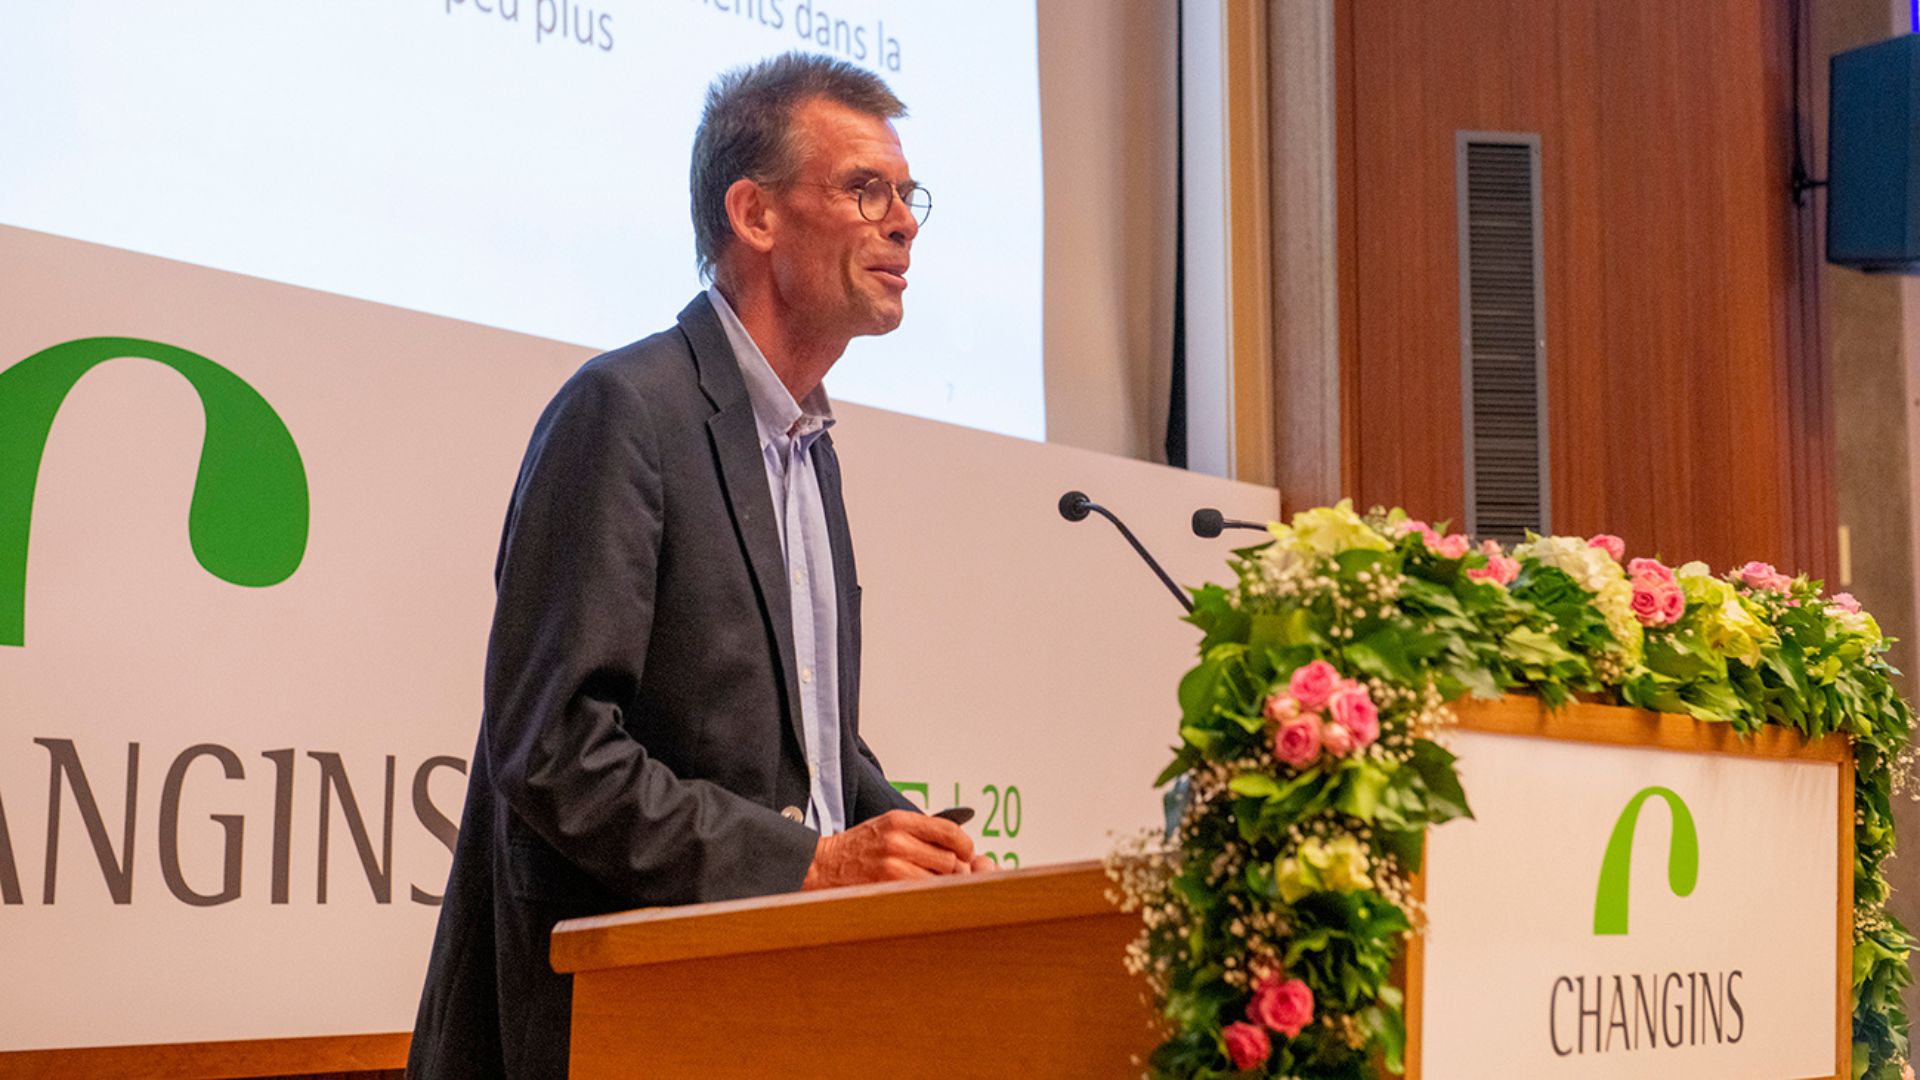 Le professeur Kees van Leeuwen lors de sa conférence à Changins. Photo: Changins